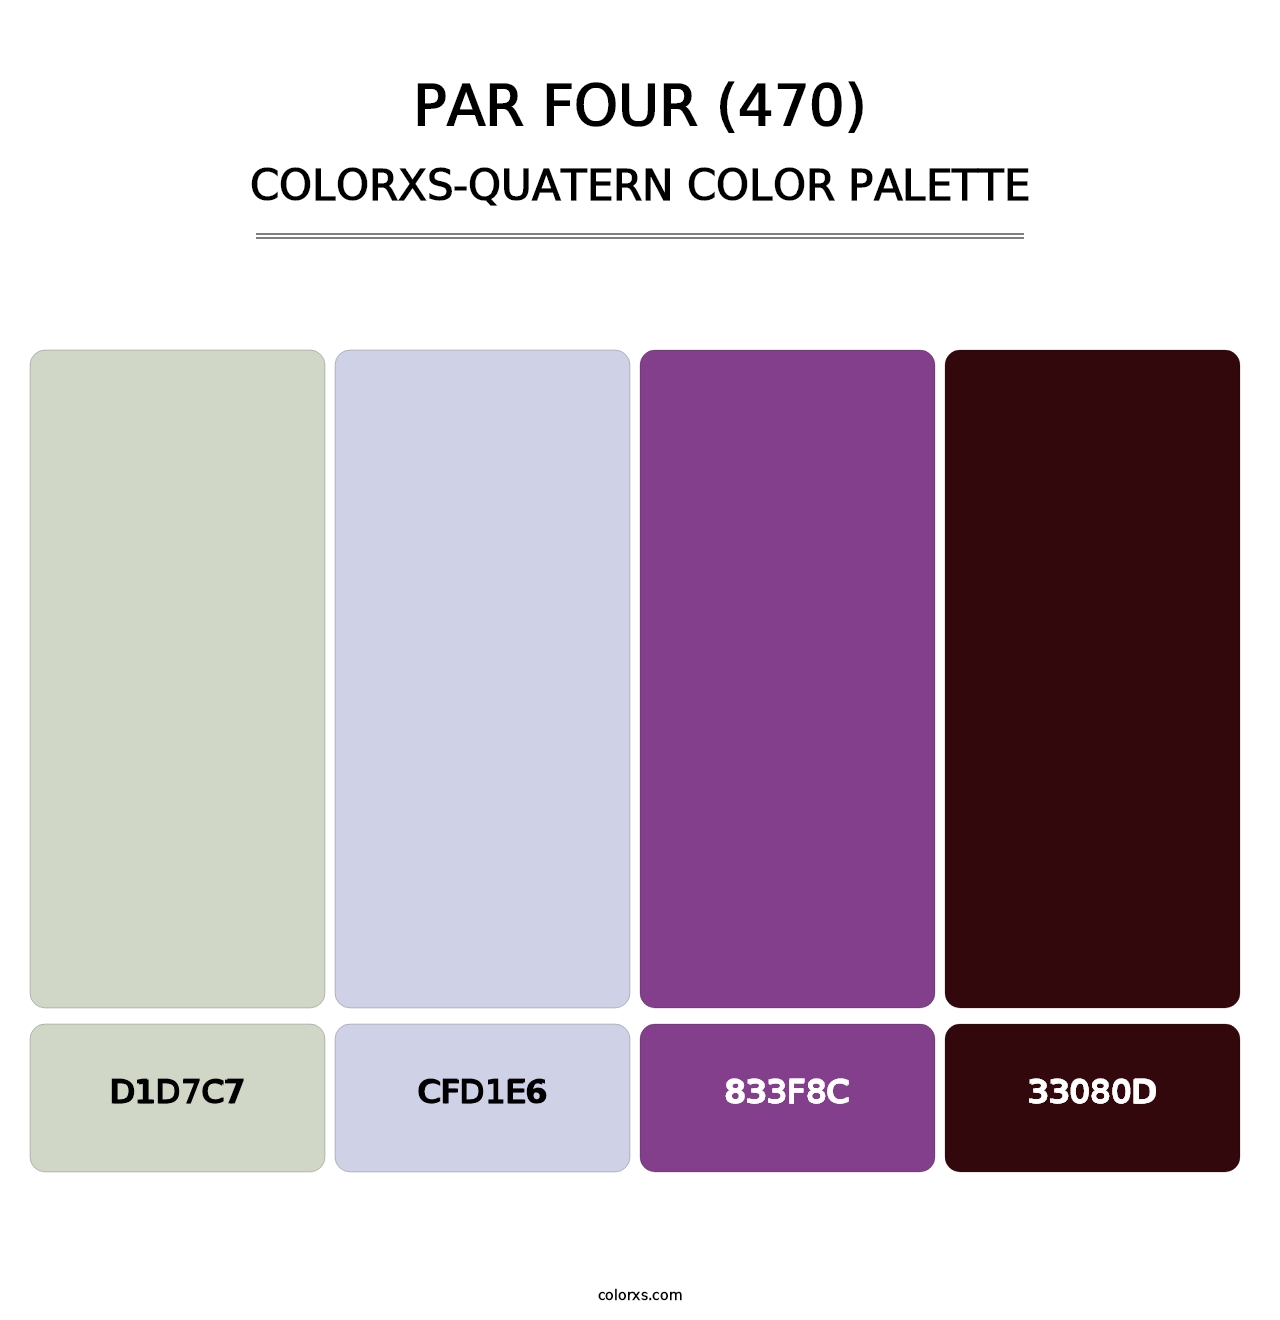 Par Four (470) - Colorxs Quatern Palette